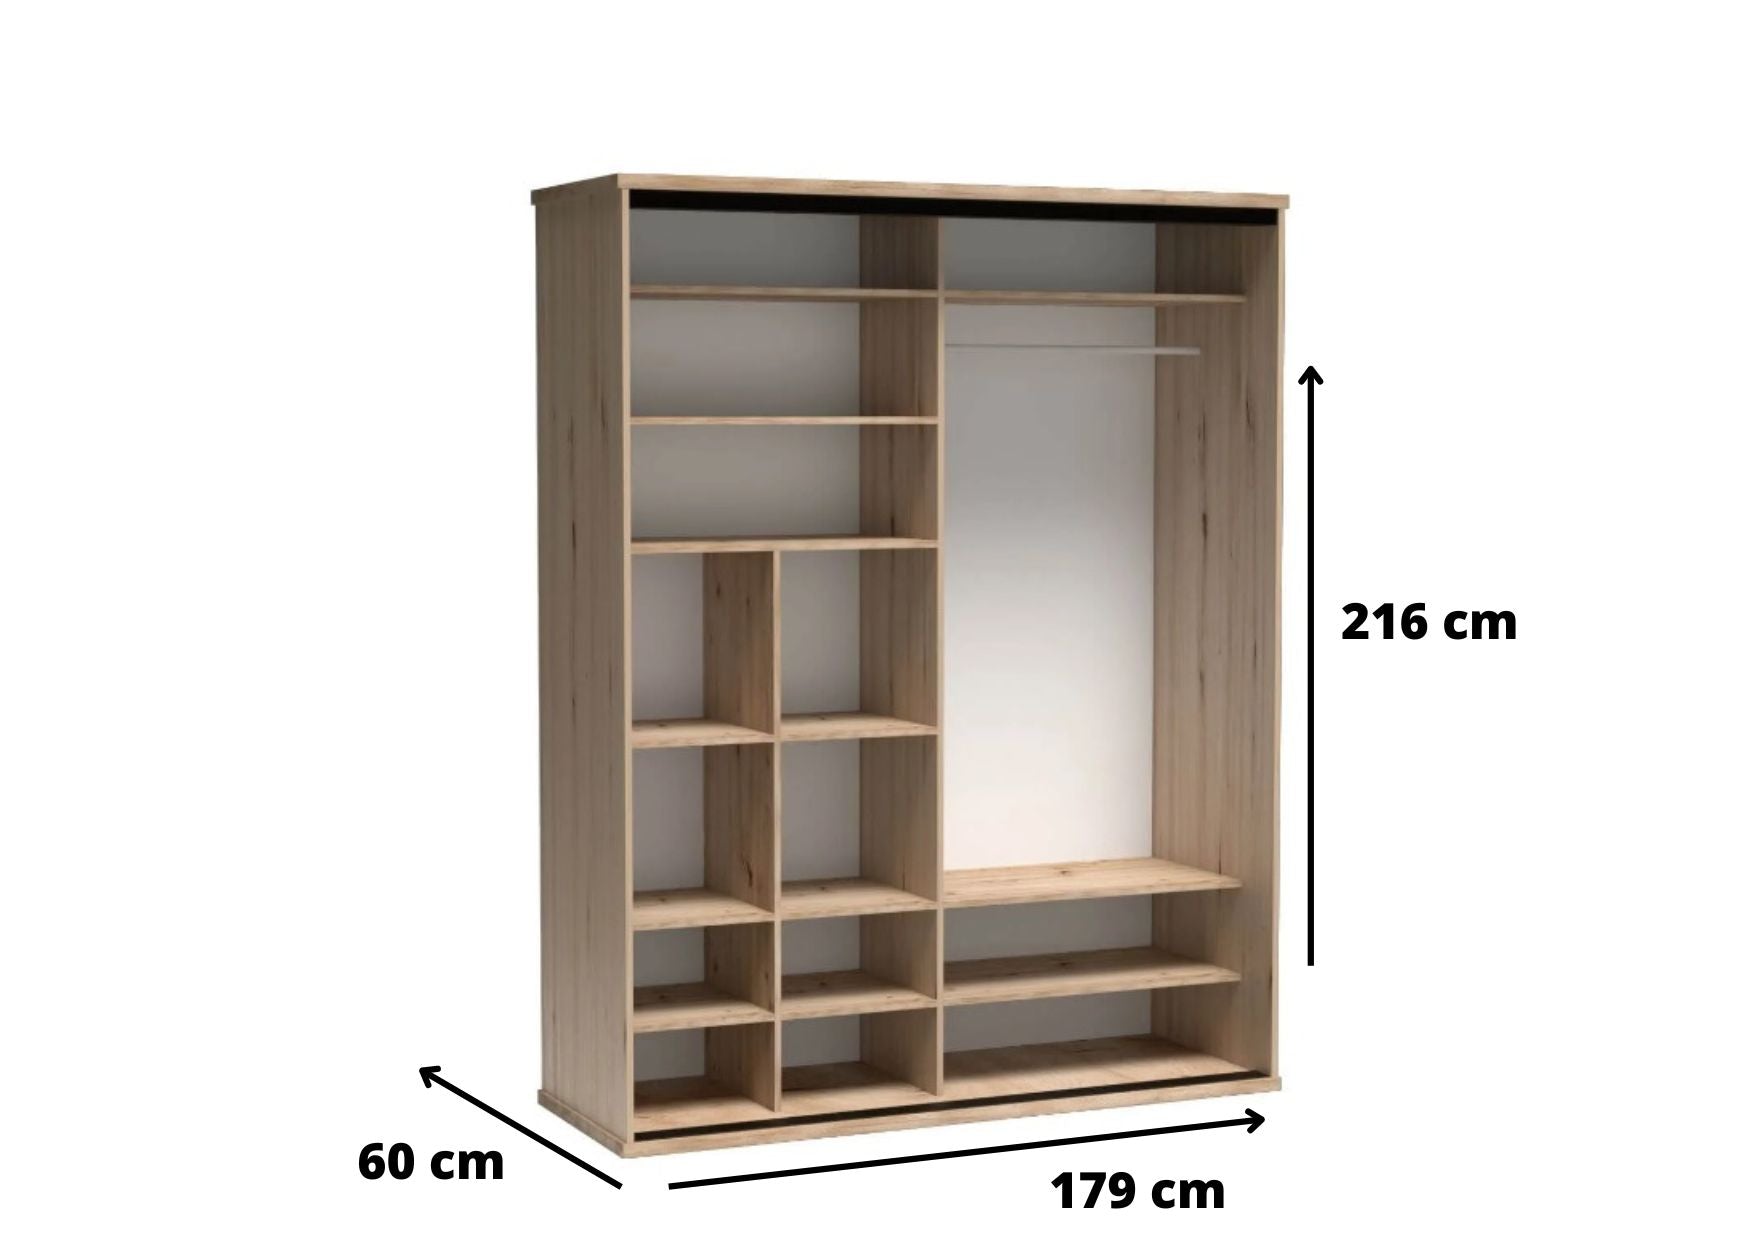 Wymiary dużej szafy przesuwnej garderoby Artisan są tak dostosowane aby mebel był stabilny i funkcjonalny. Mnogość półek, przegroda oraz drążek ułatwiają segregację.